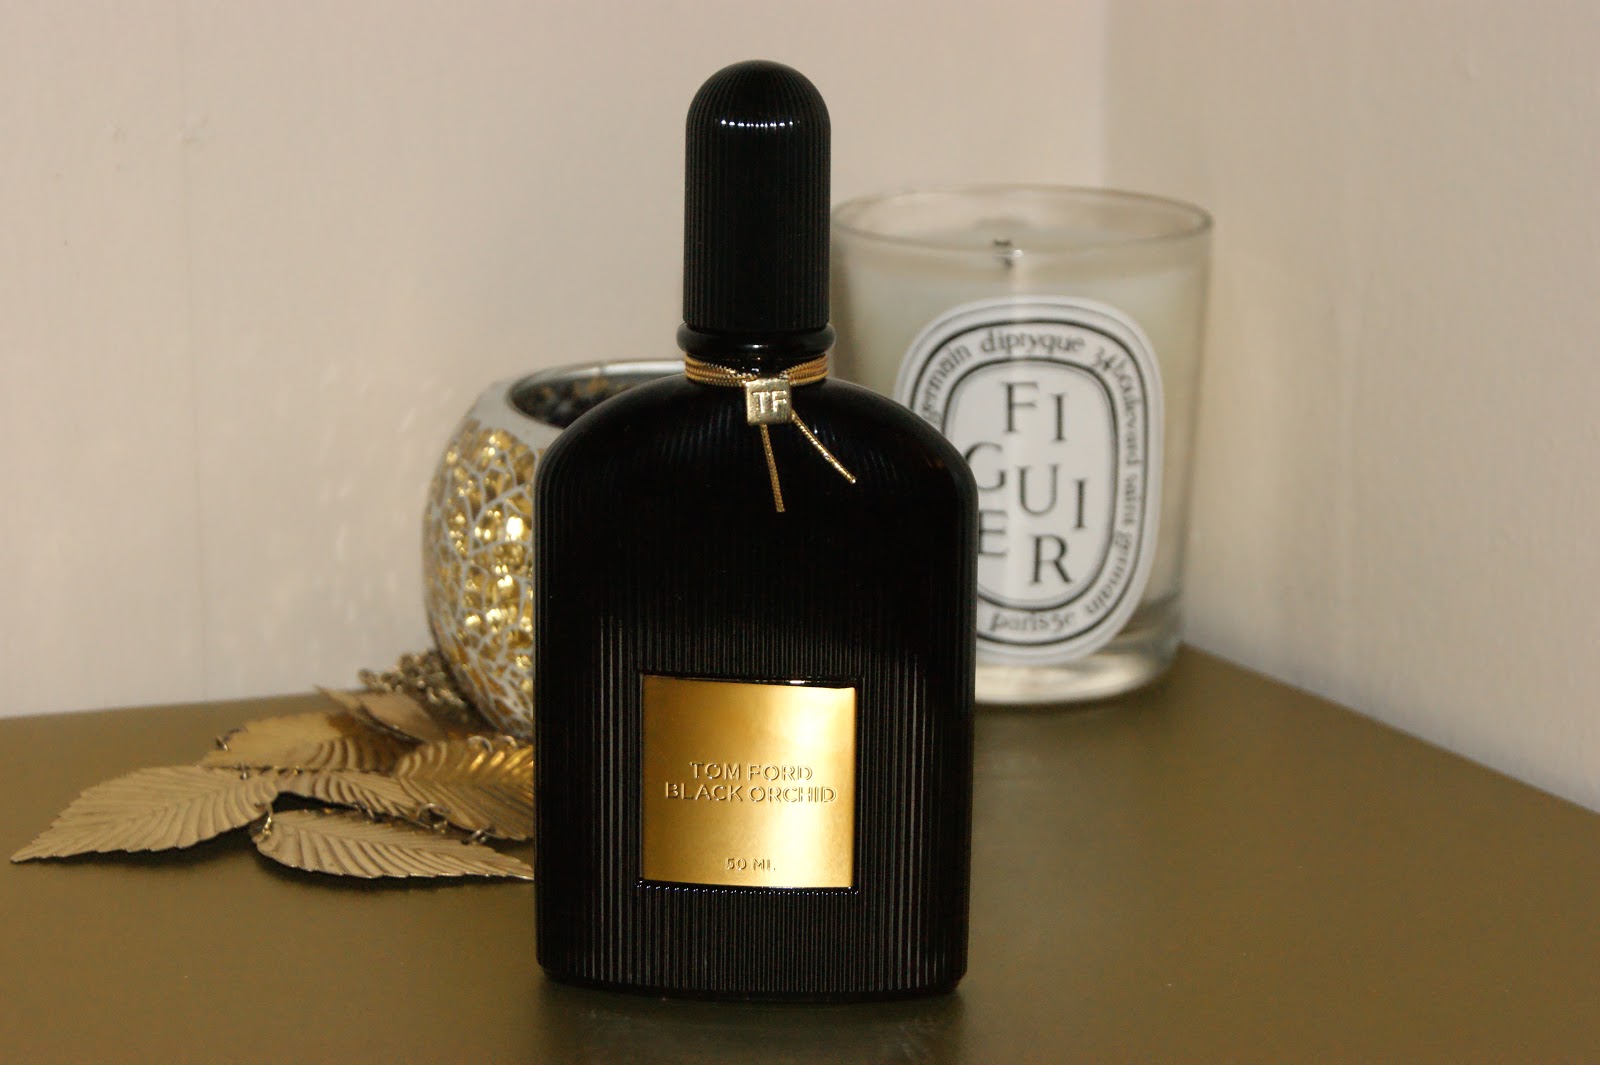 Tom Ford Black Orchid Eau de Parfum - Review